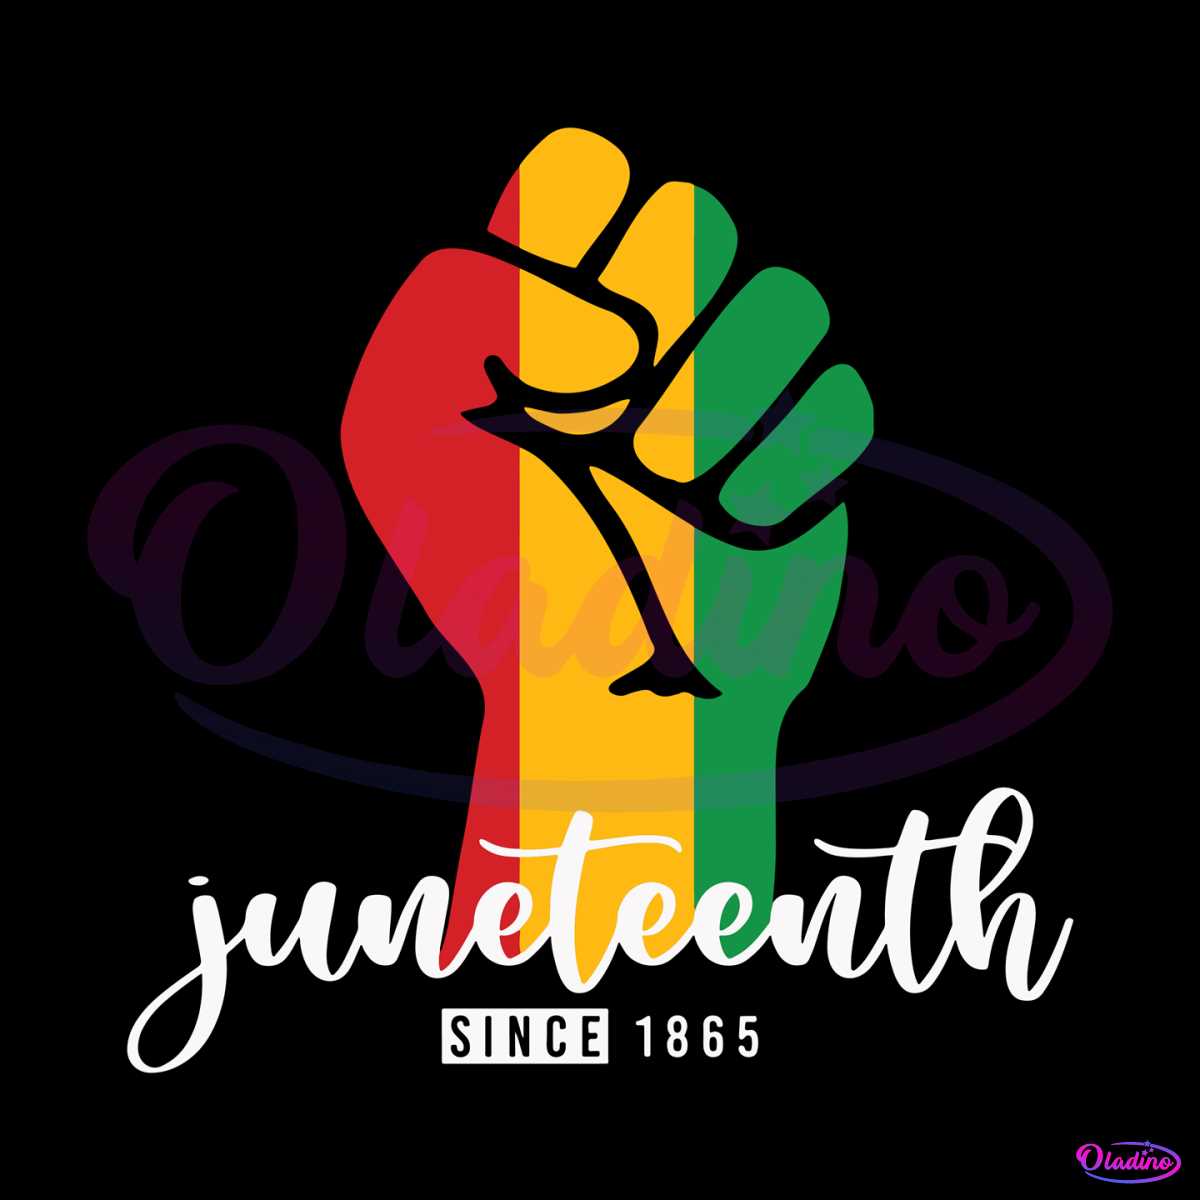 juneteenth-since-1865-svg-for-cricut-sublimation-files